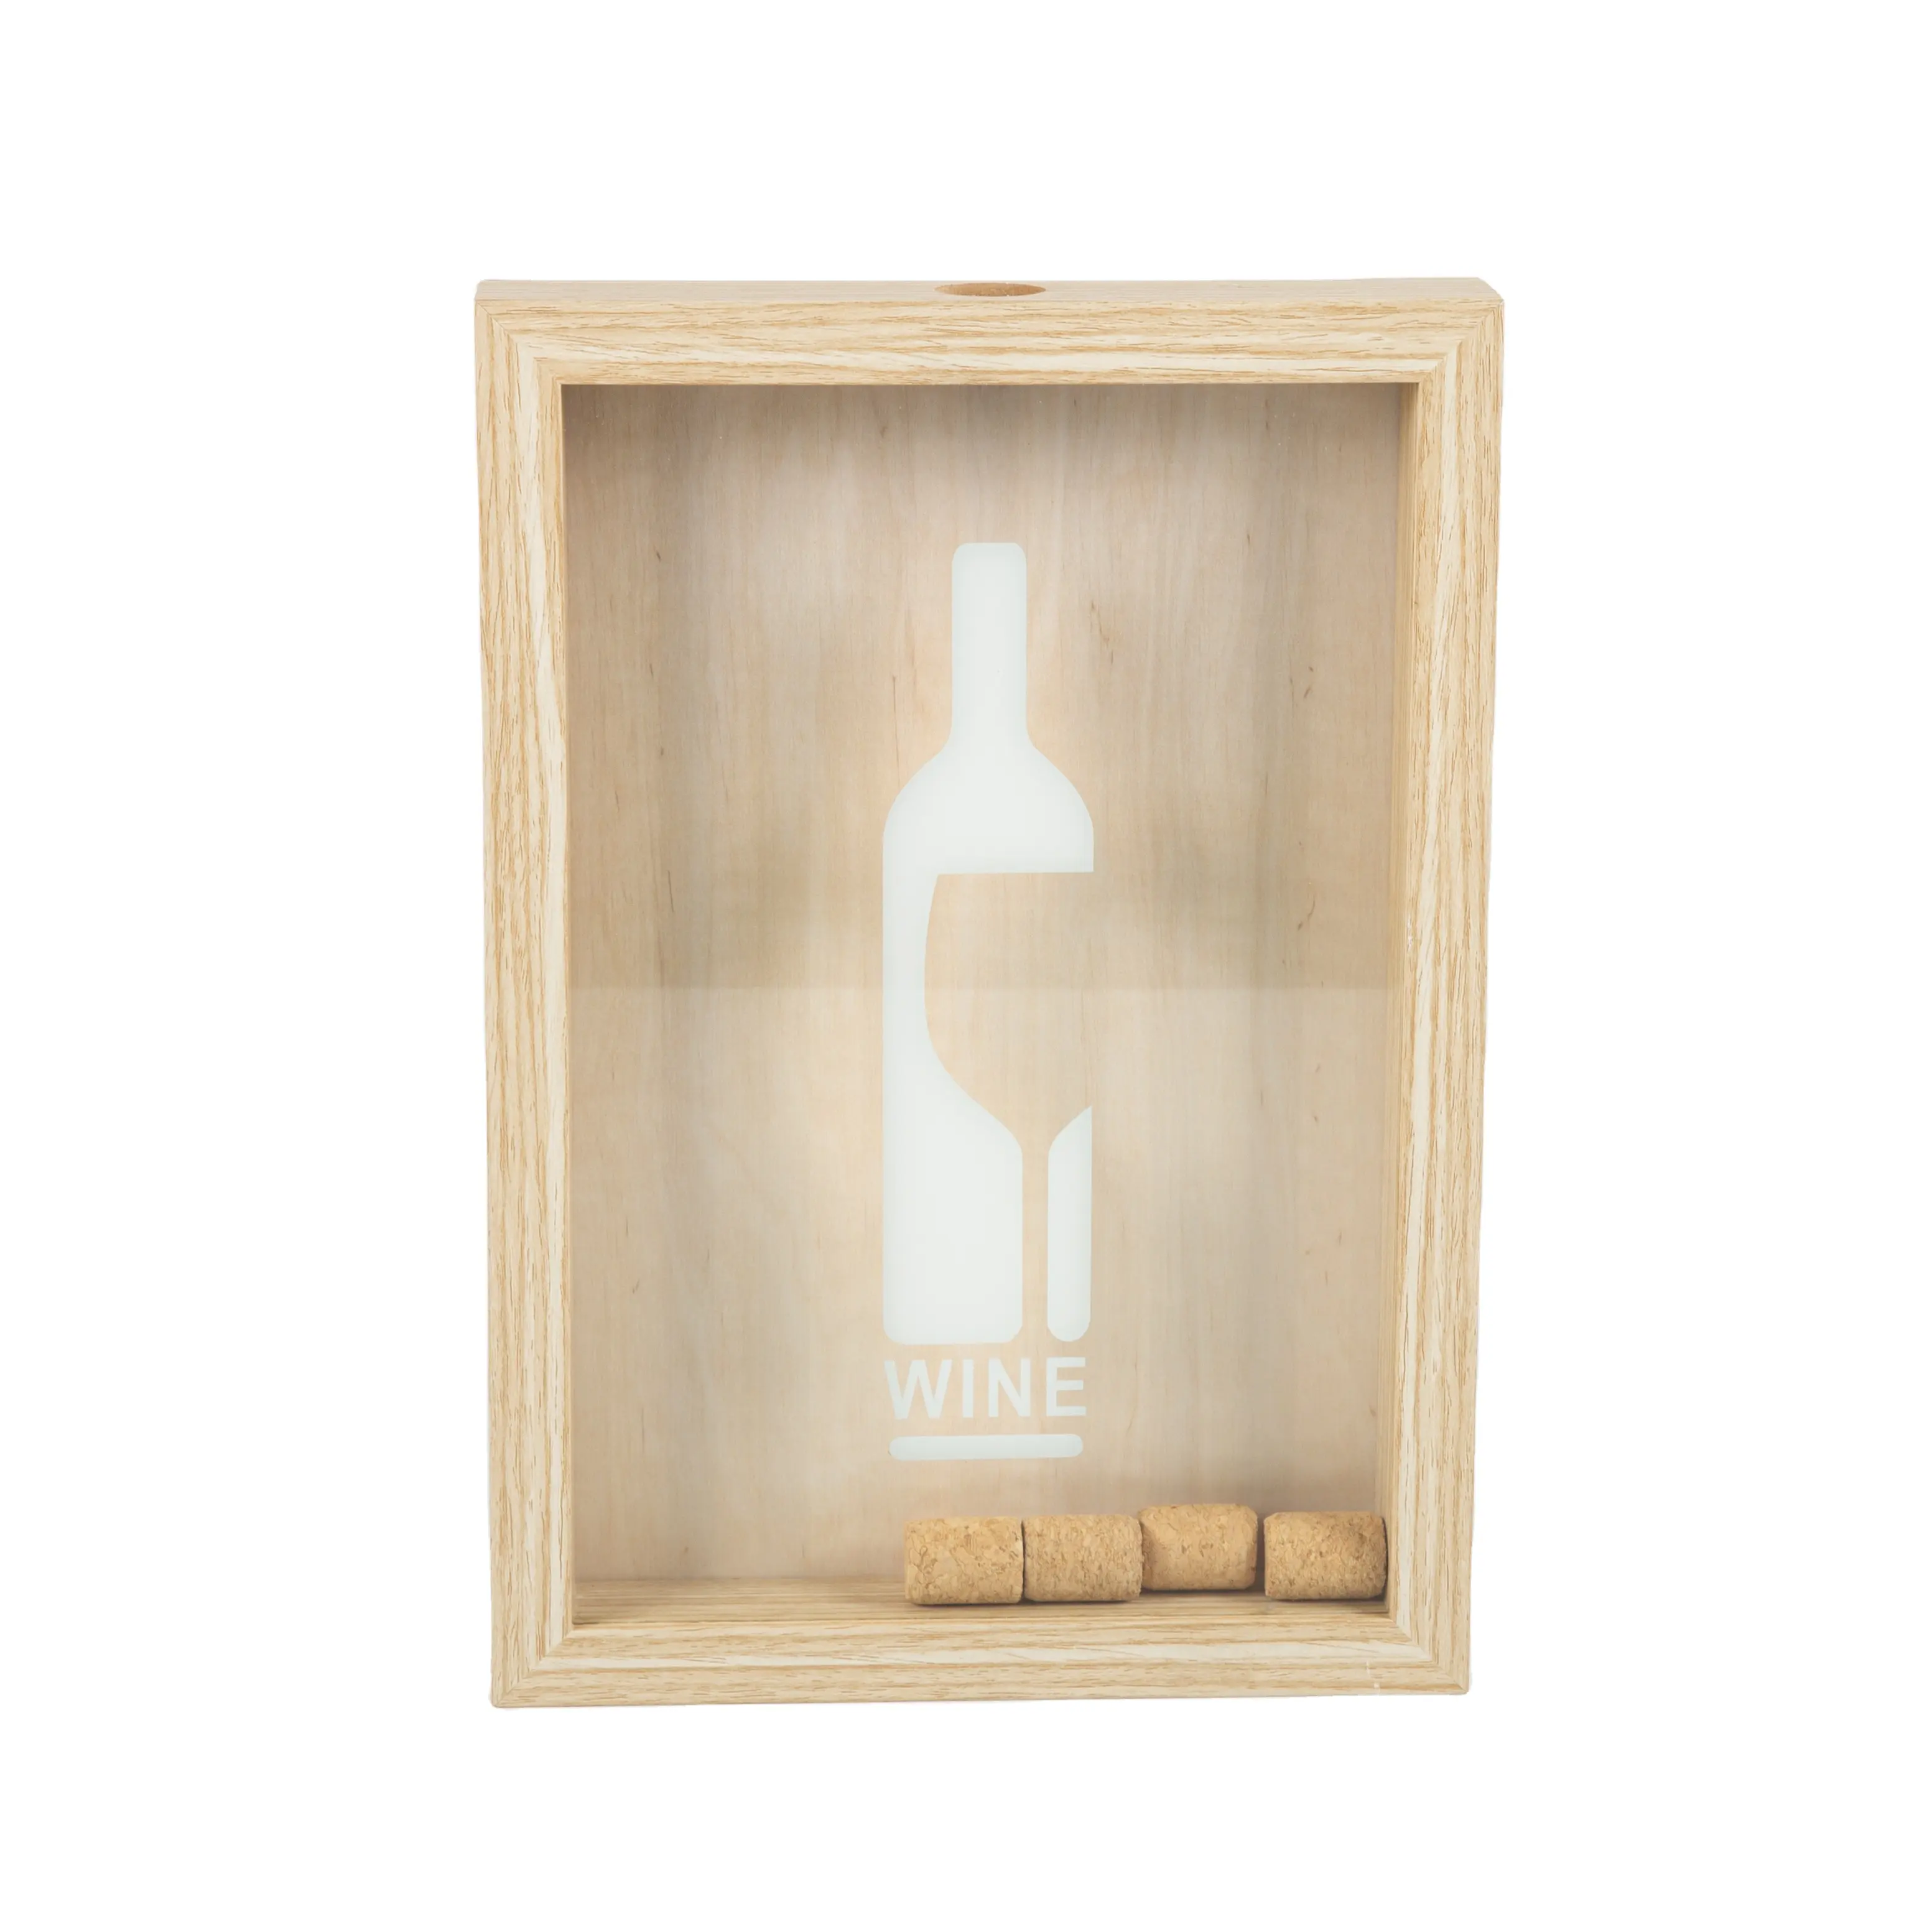 Sofine moldura de madeira simples design nórdico, moldura de madeira para vinho e armazenamento